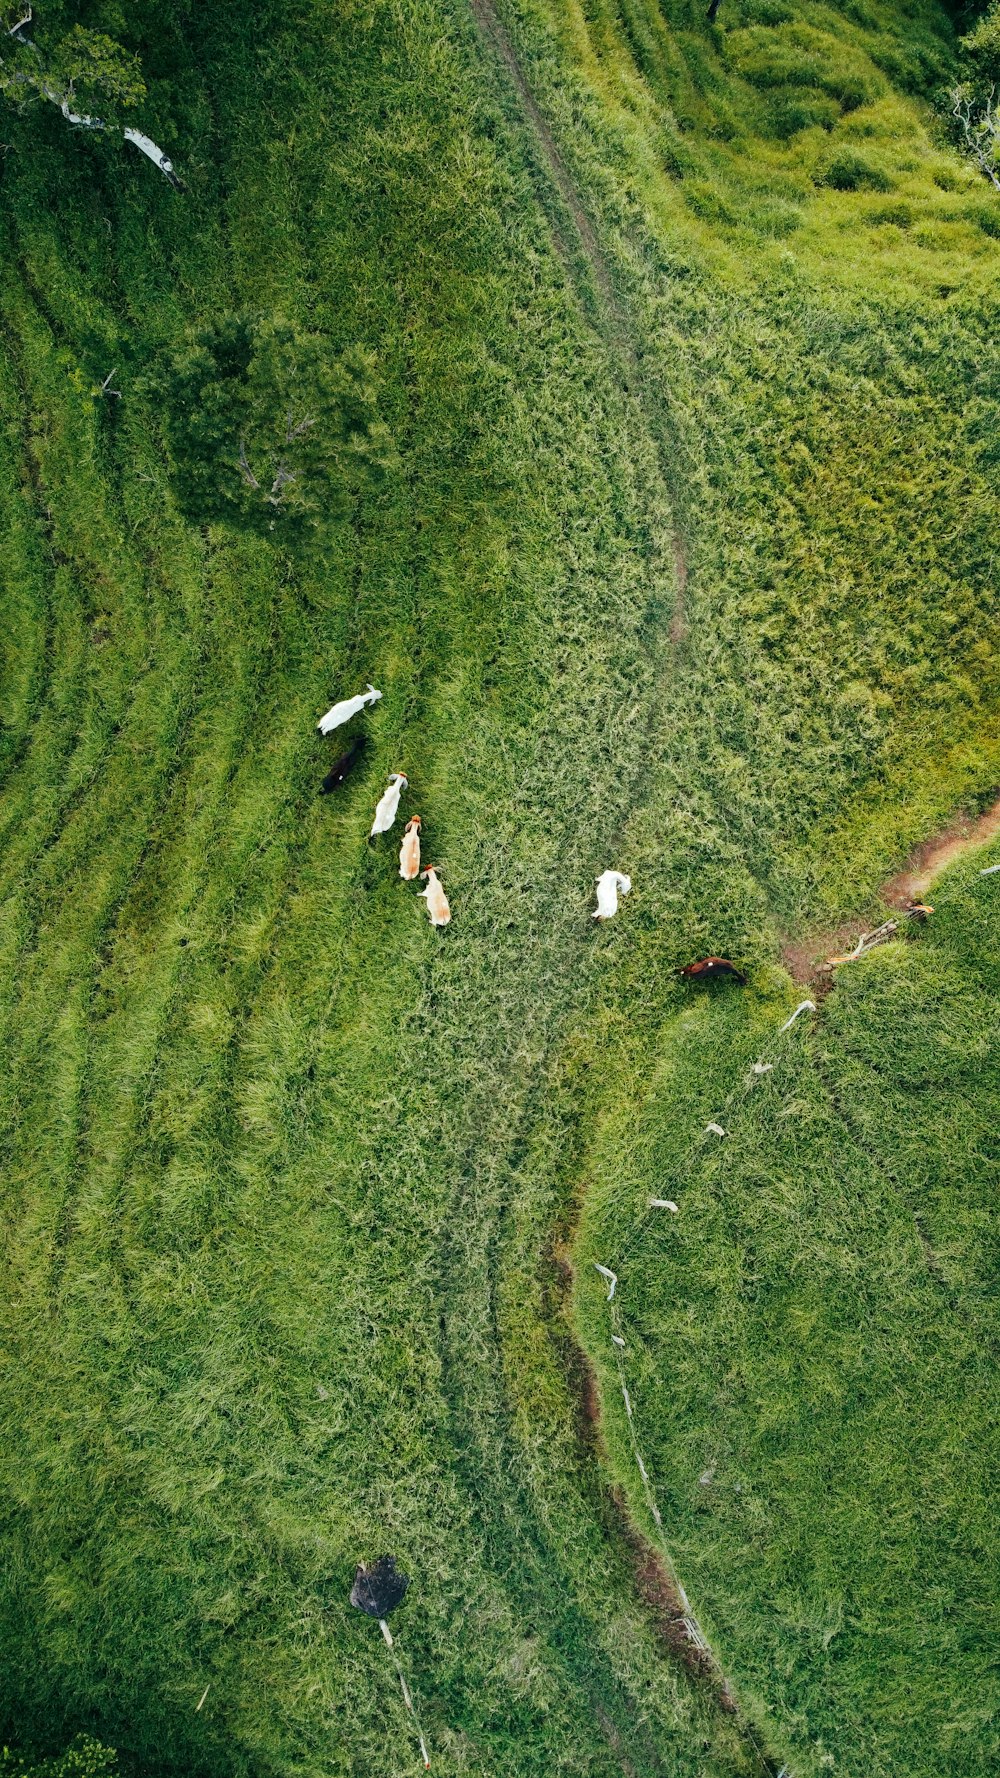 a herd of cattle walking across a lush green field